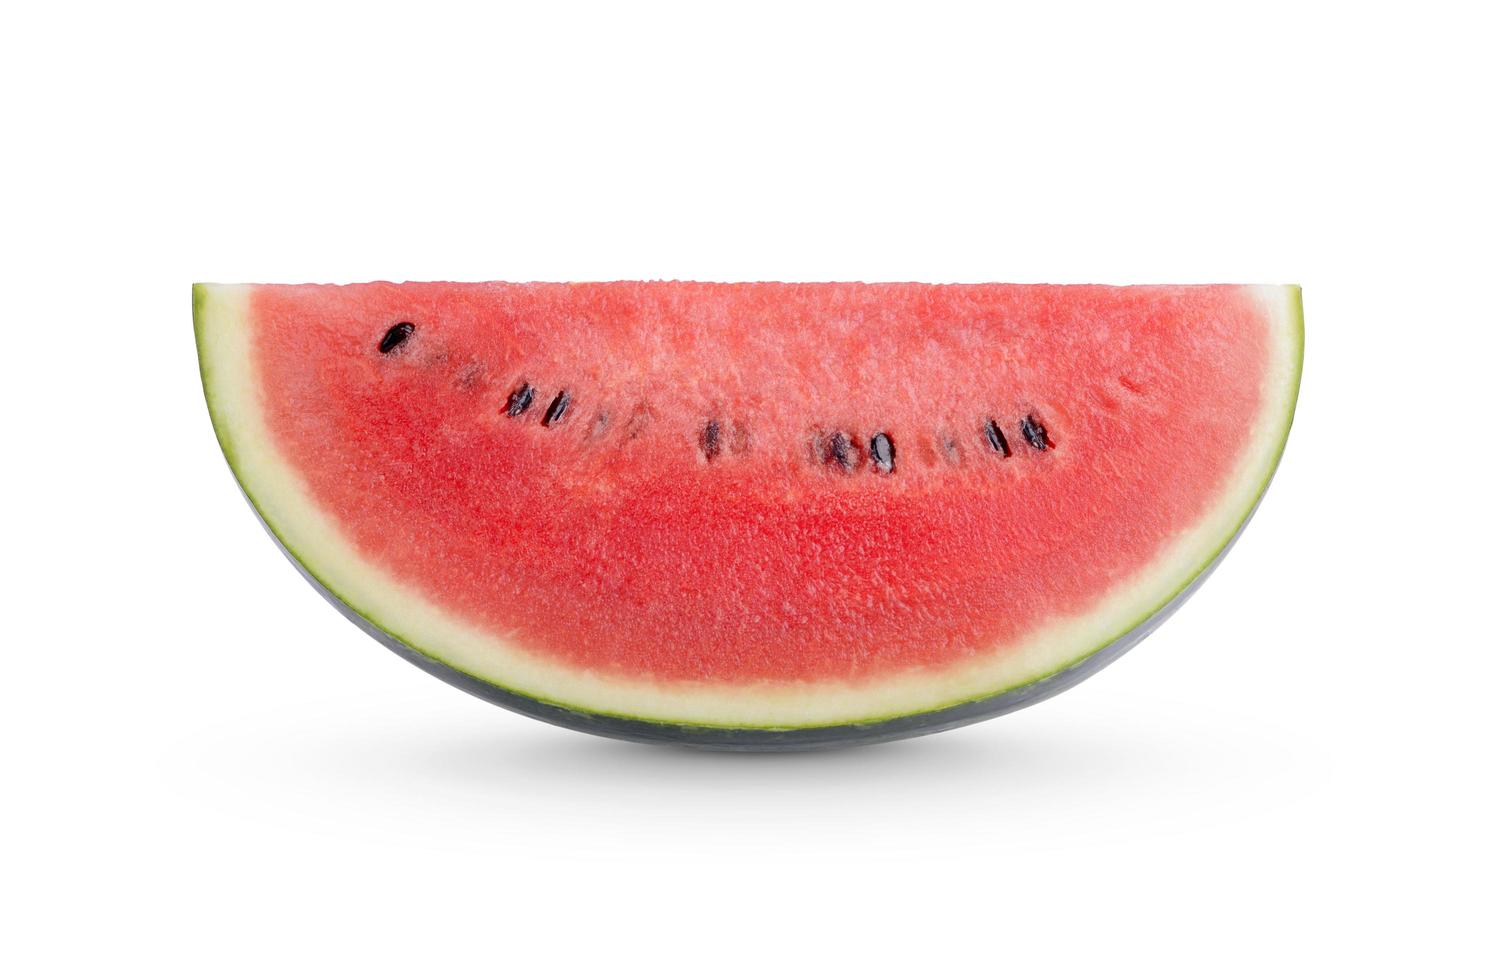 in Scheiben geschnittene Wassermelone isoliert auf weißem Hintergrund foto